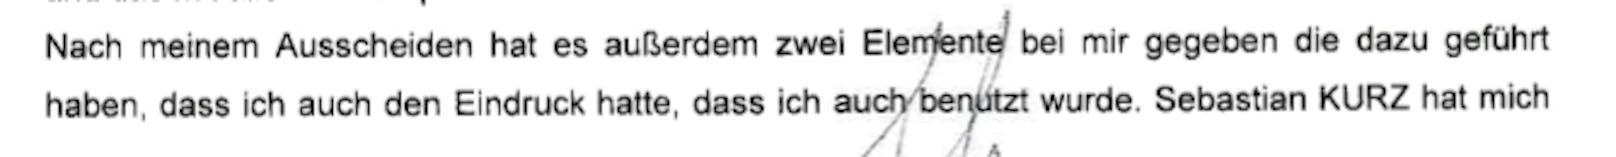 Thomas Schmid belastet Sebastian Kurz in 15 Einvernahmen massiv.